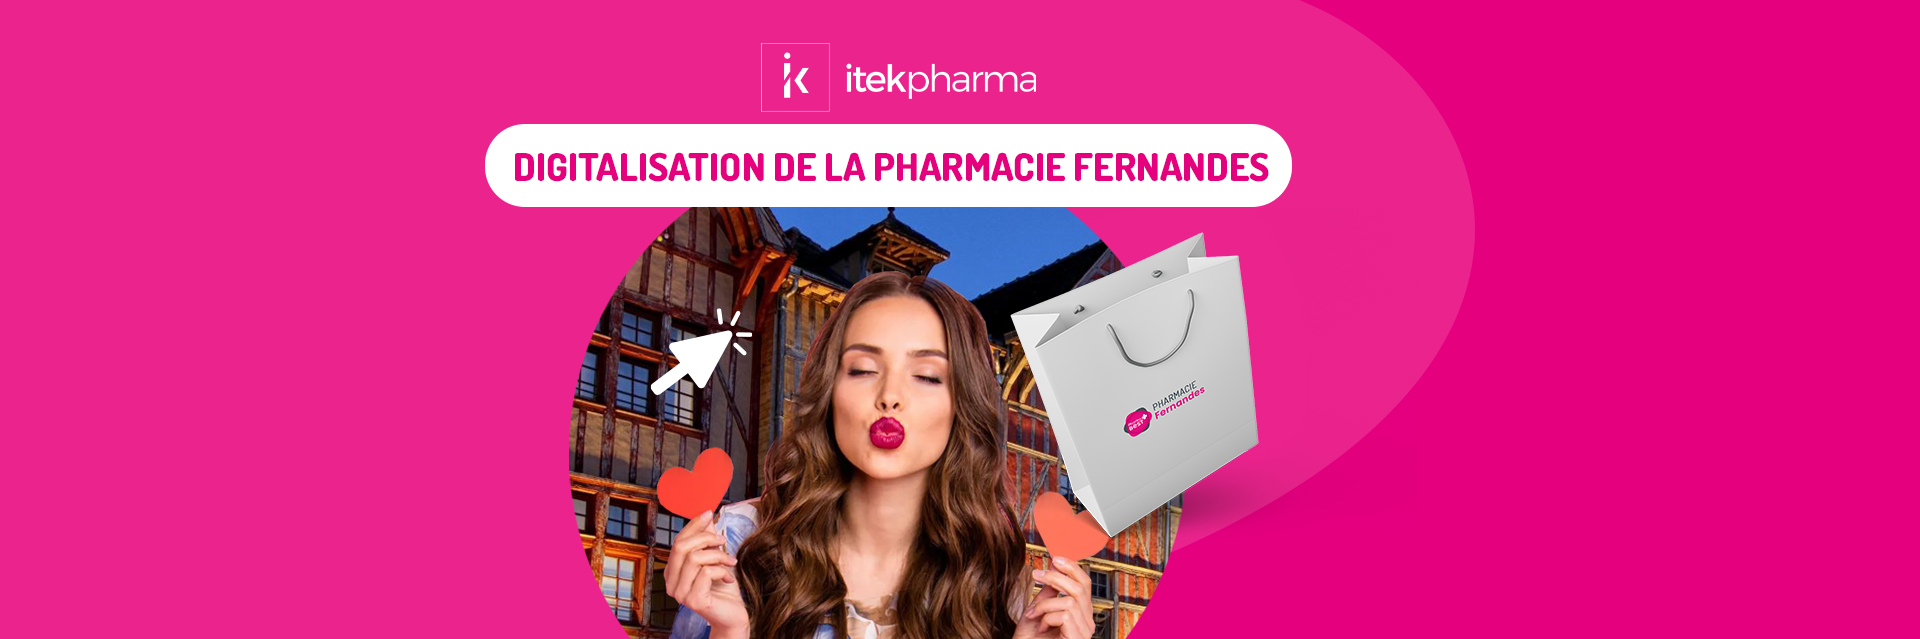 Pharmacie Fernandes by Itekpharma